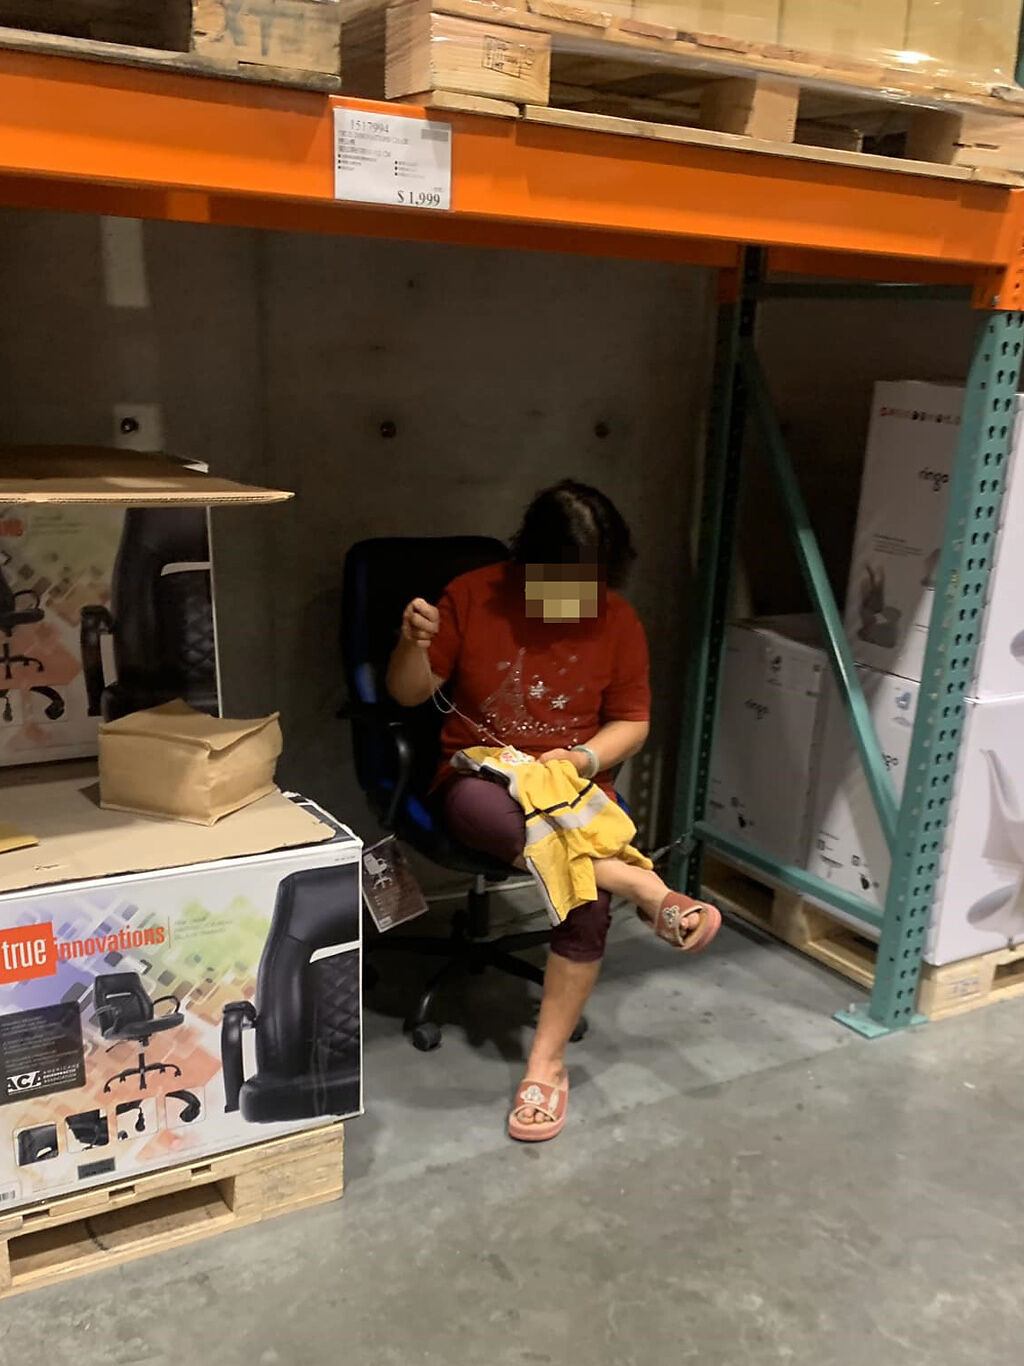 阿嬤「自帶針線」悠然自得地坐在販售商品展示的椅子上縫衣服。(翻攝臉書路上觀察學院)